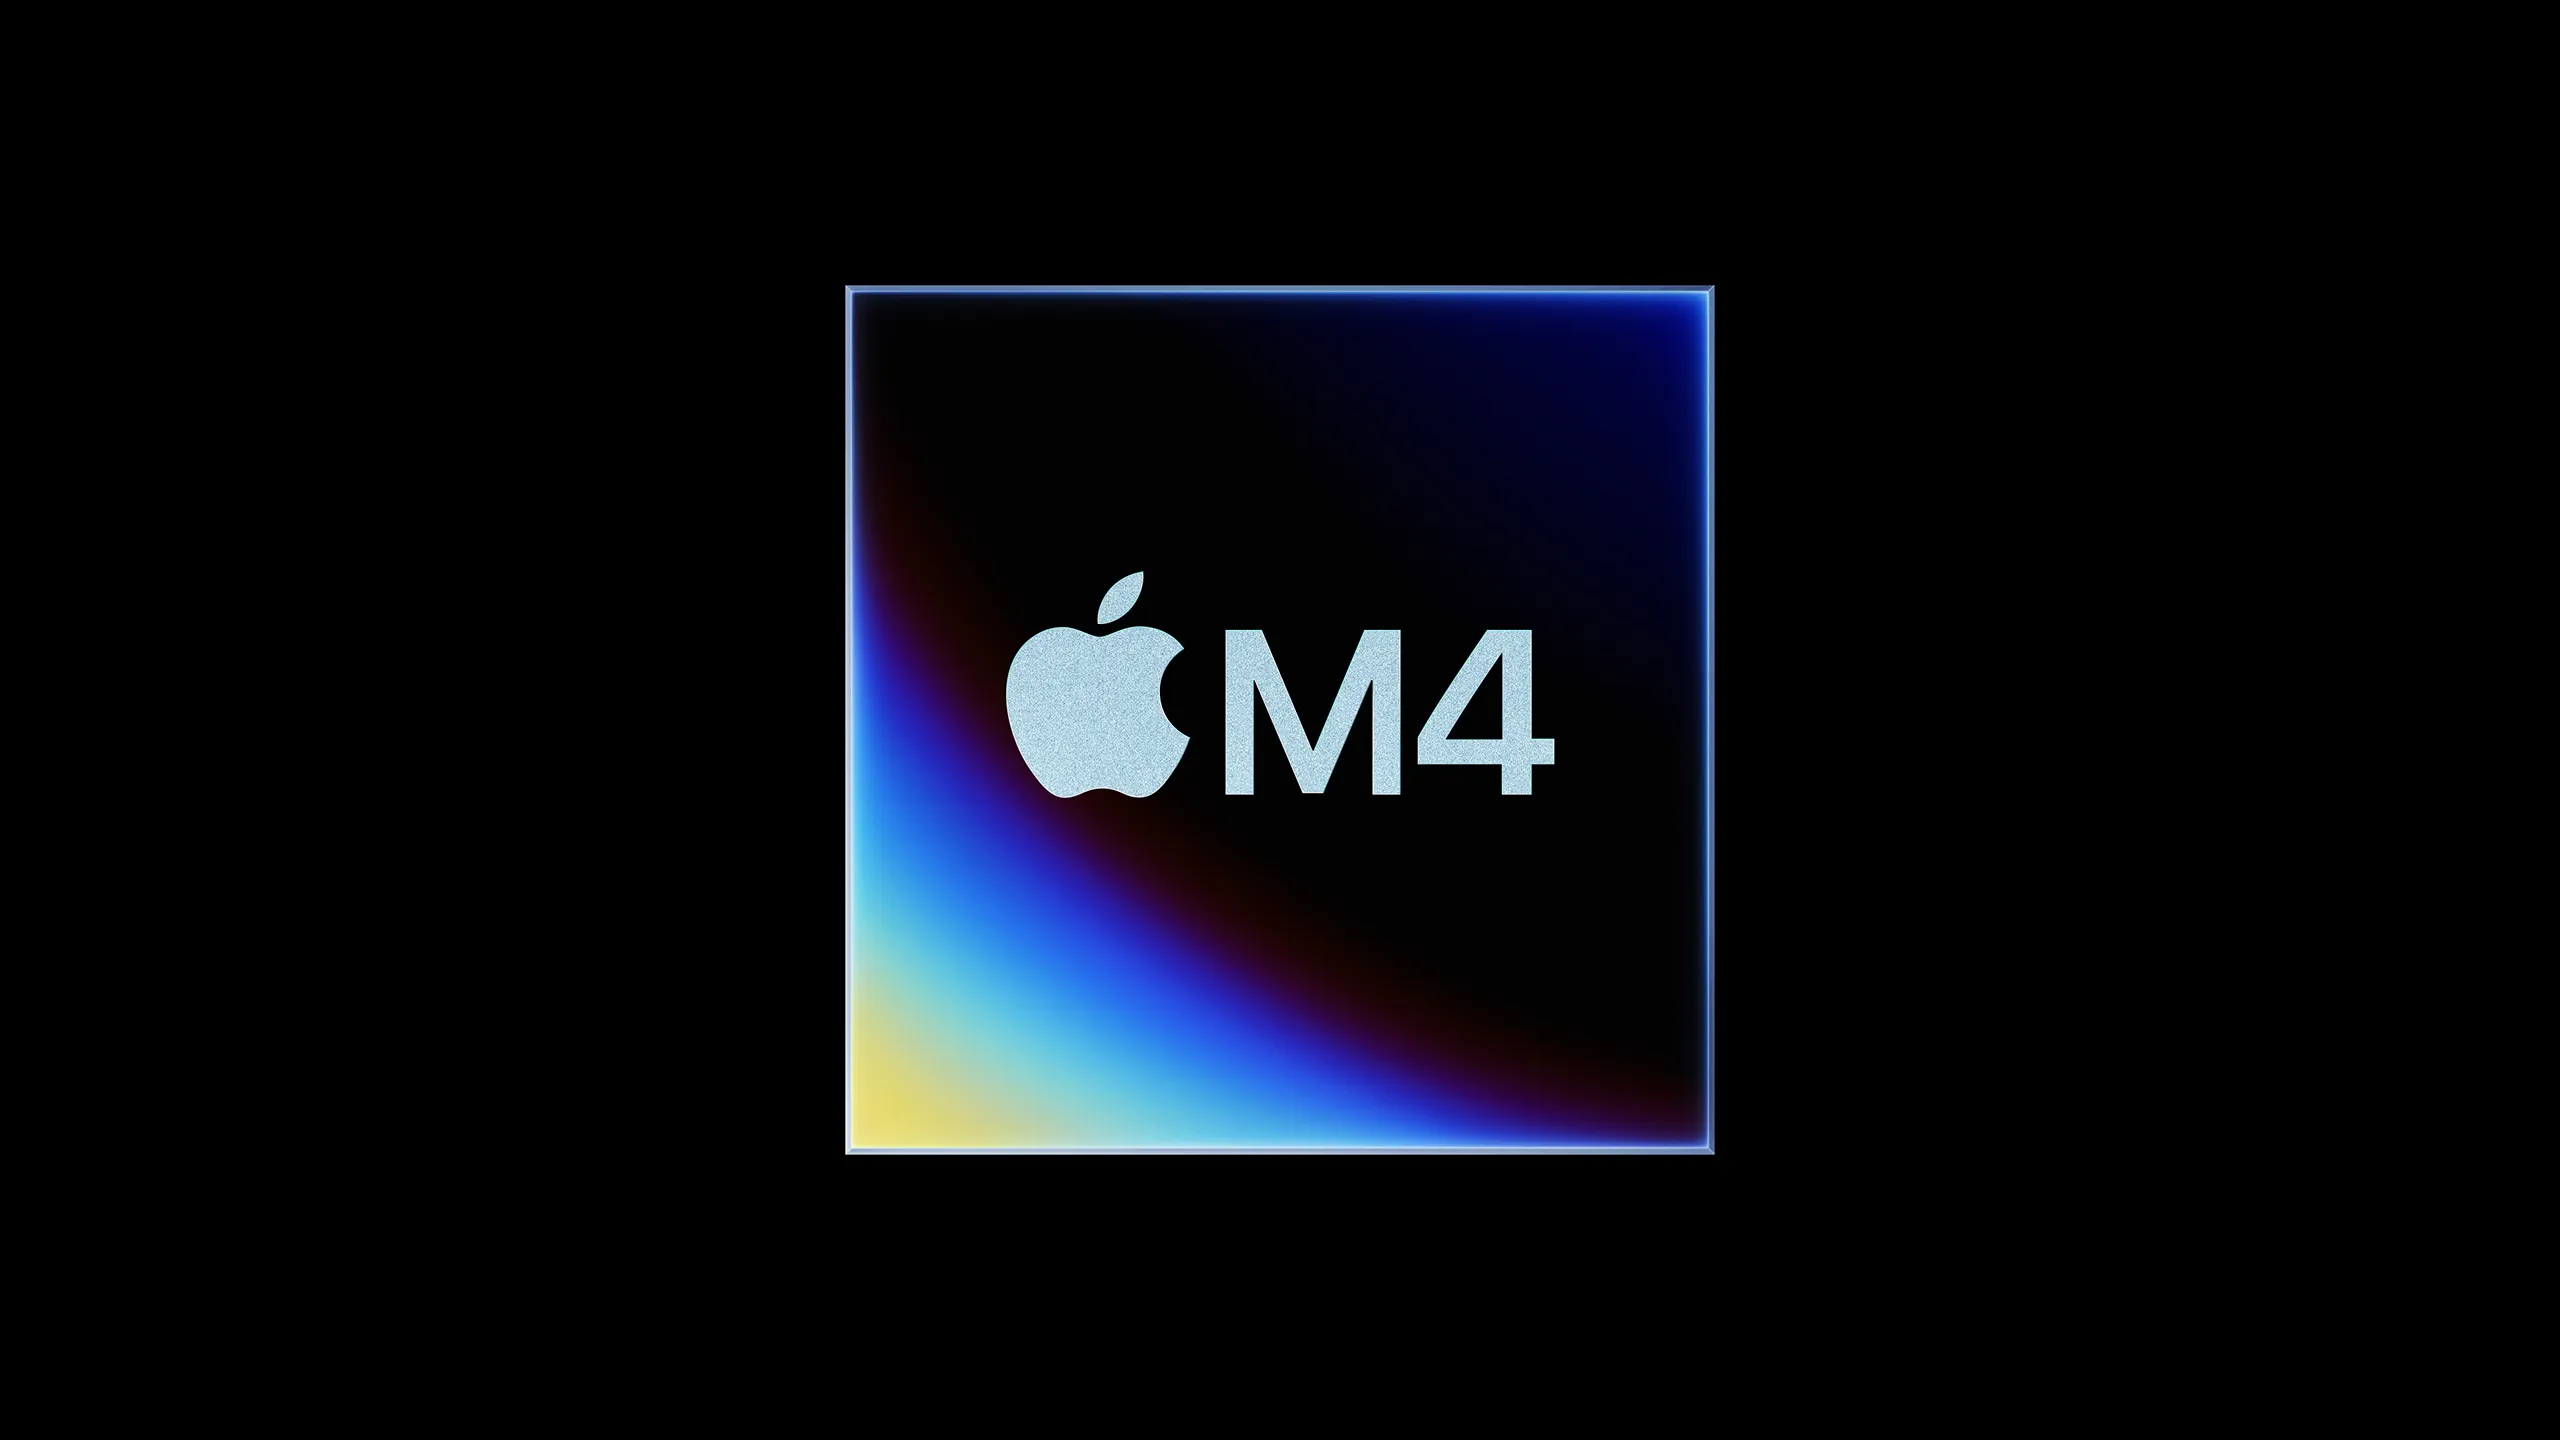 Apple giới thiệu chip M4 mới tập trung vào AI